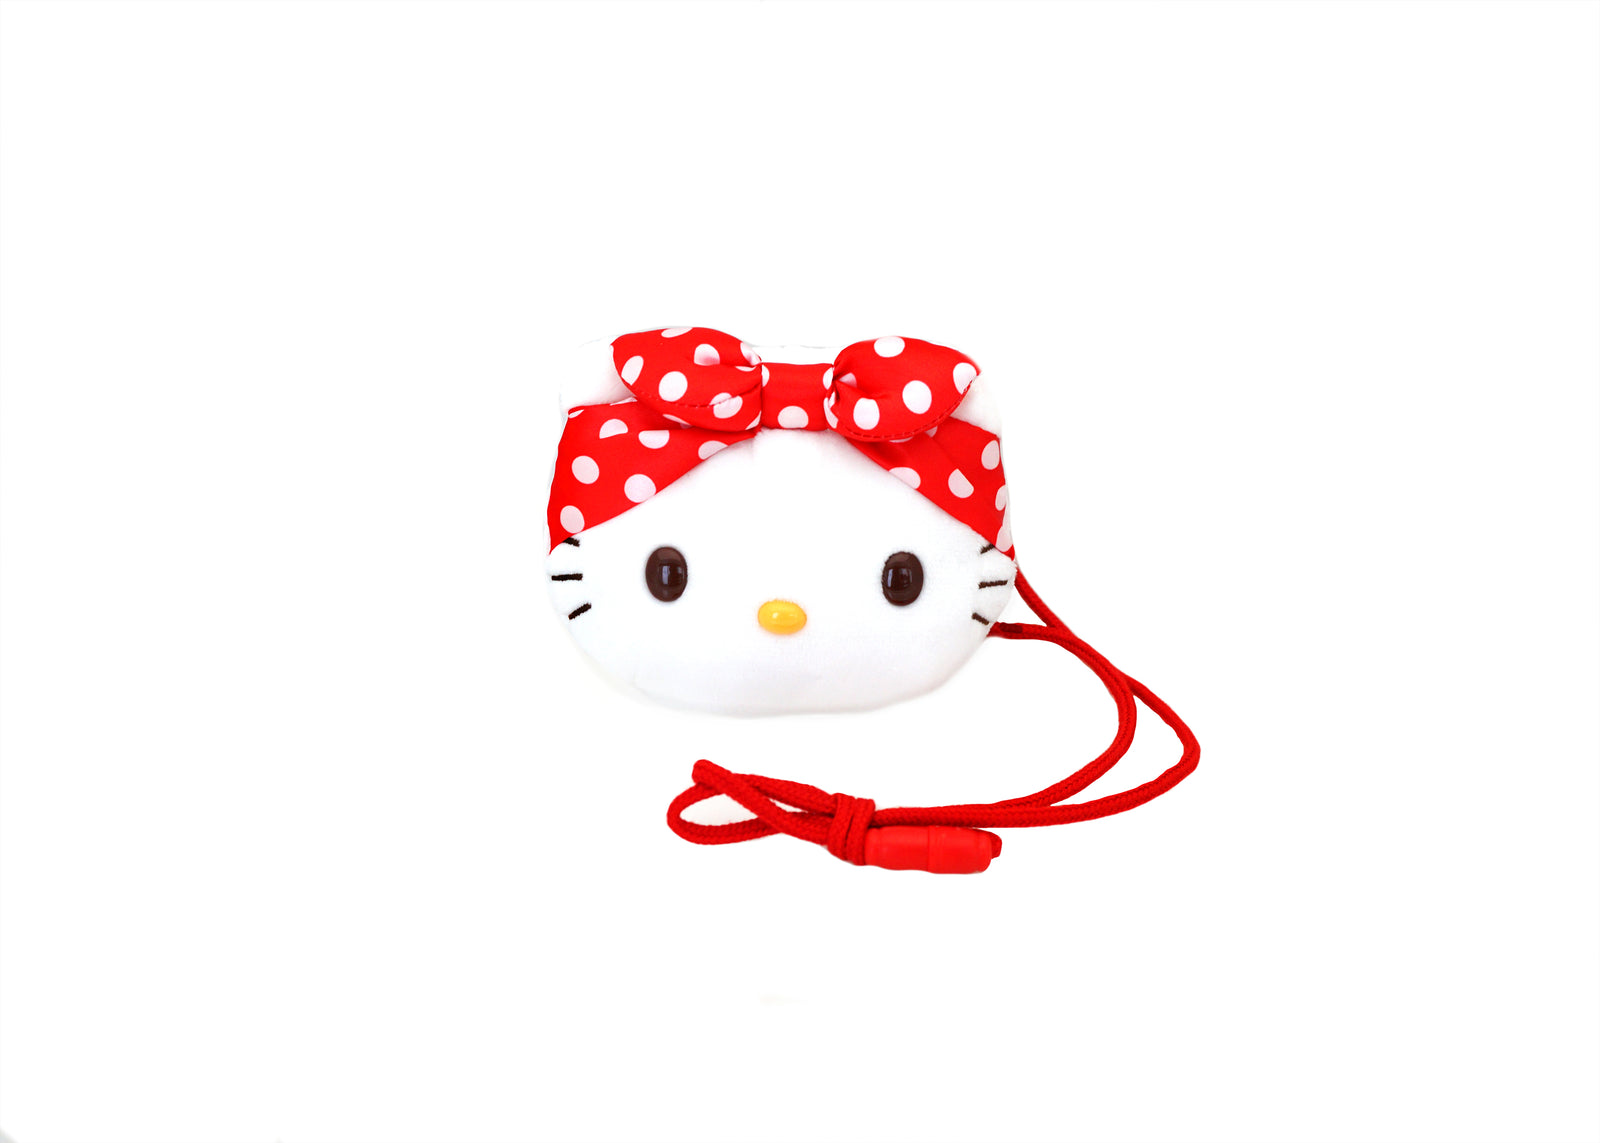 Hello Kitty Rosie Pin Set